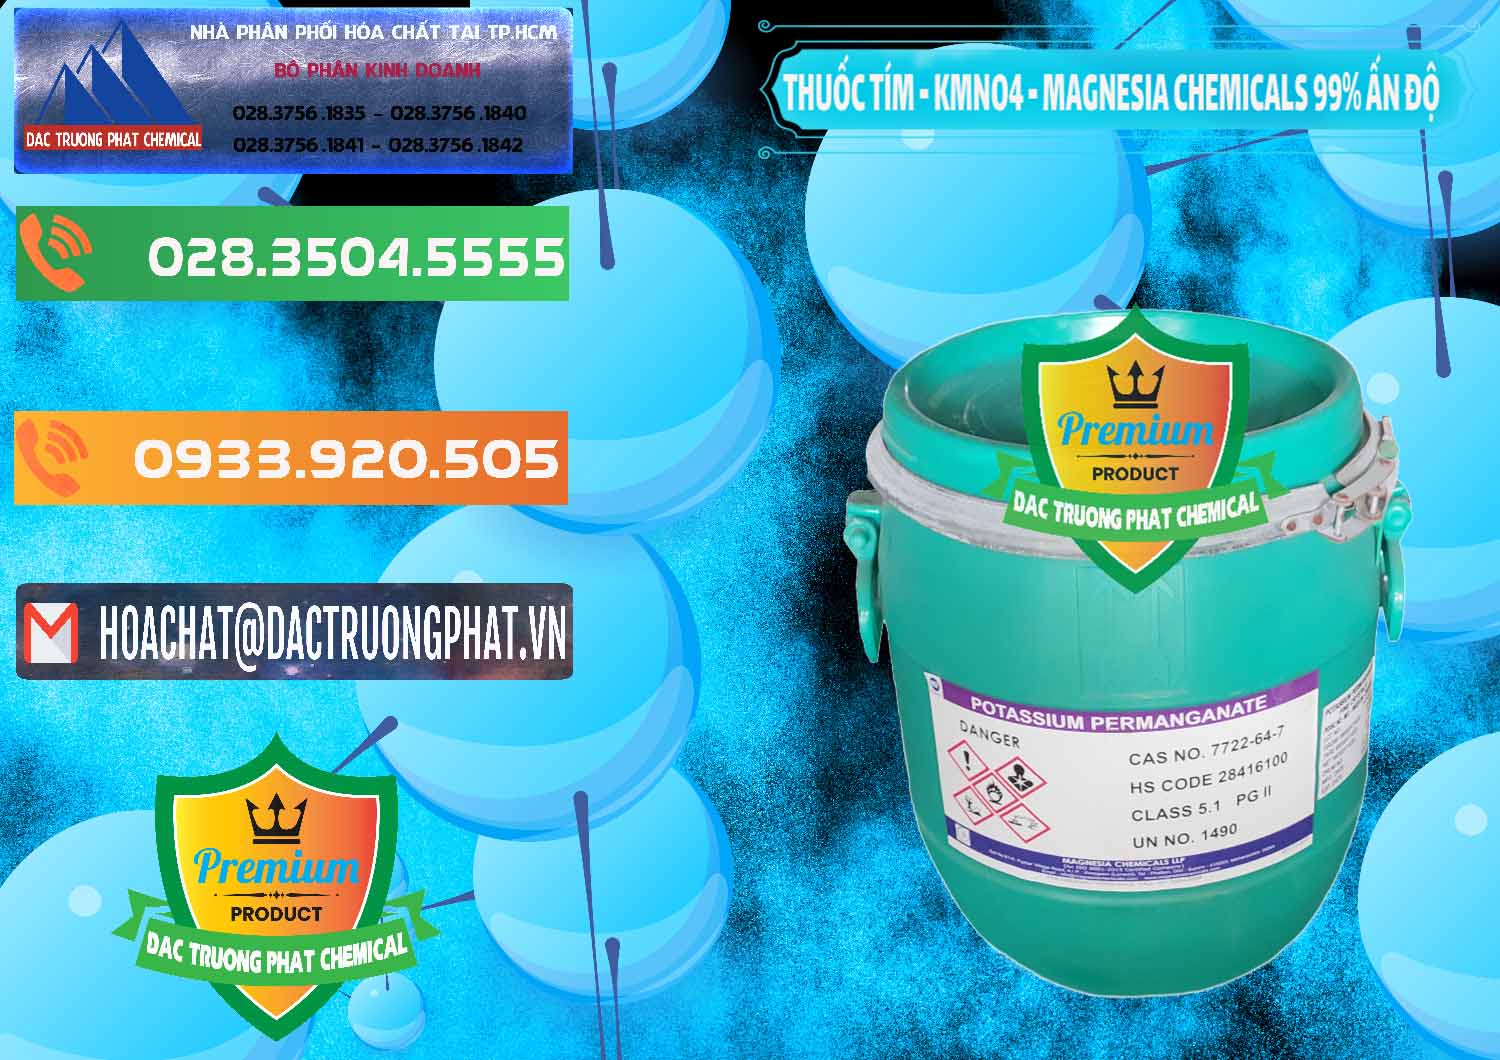 Công ty chuyên phân phối & bán Thuốc Tím - KMNO4 Magnesia Chemicals 99% Ấn Độ India - 0251 - Công ty phân phối và cung cấp hóa chất tại TP.HCM - hoachatxulynuoc.com.vn